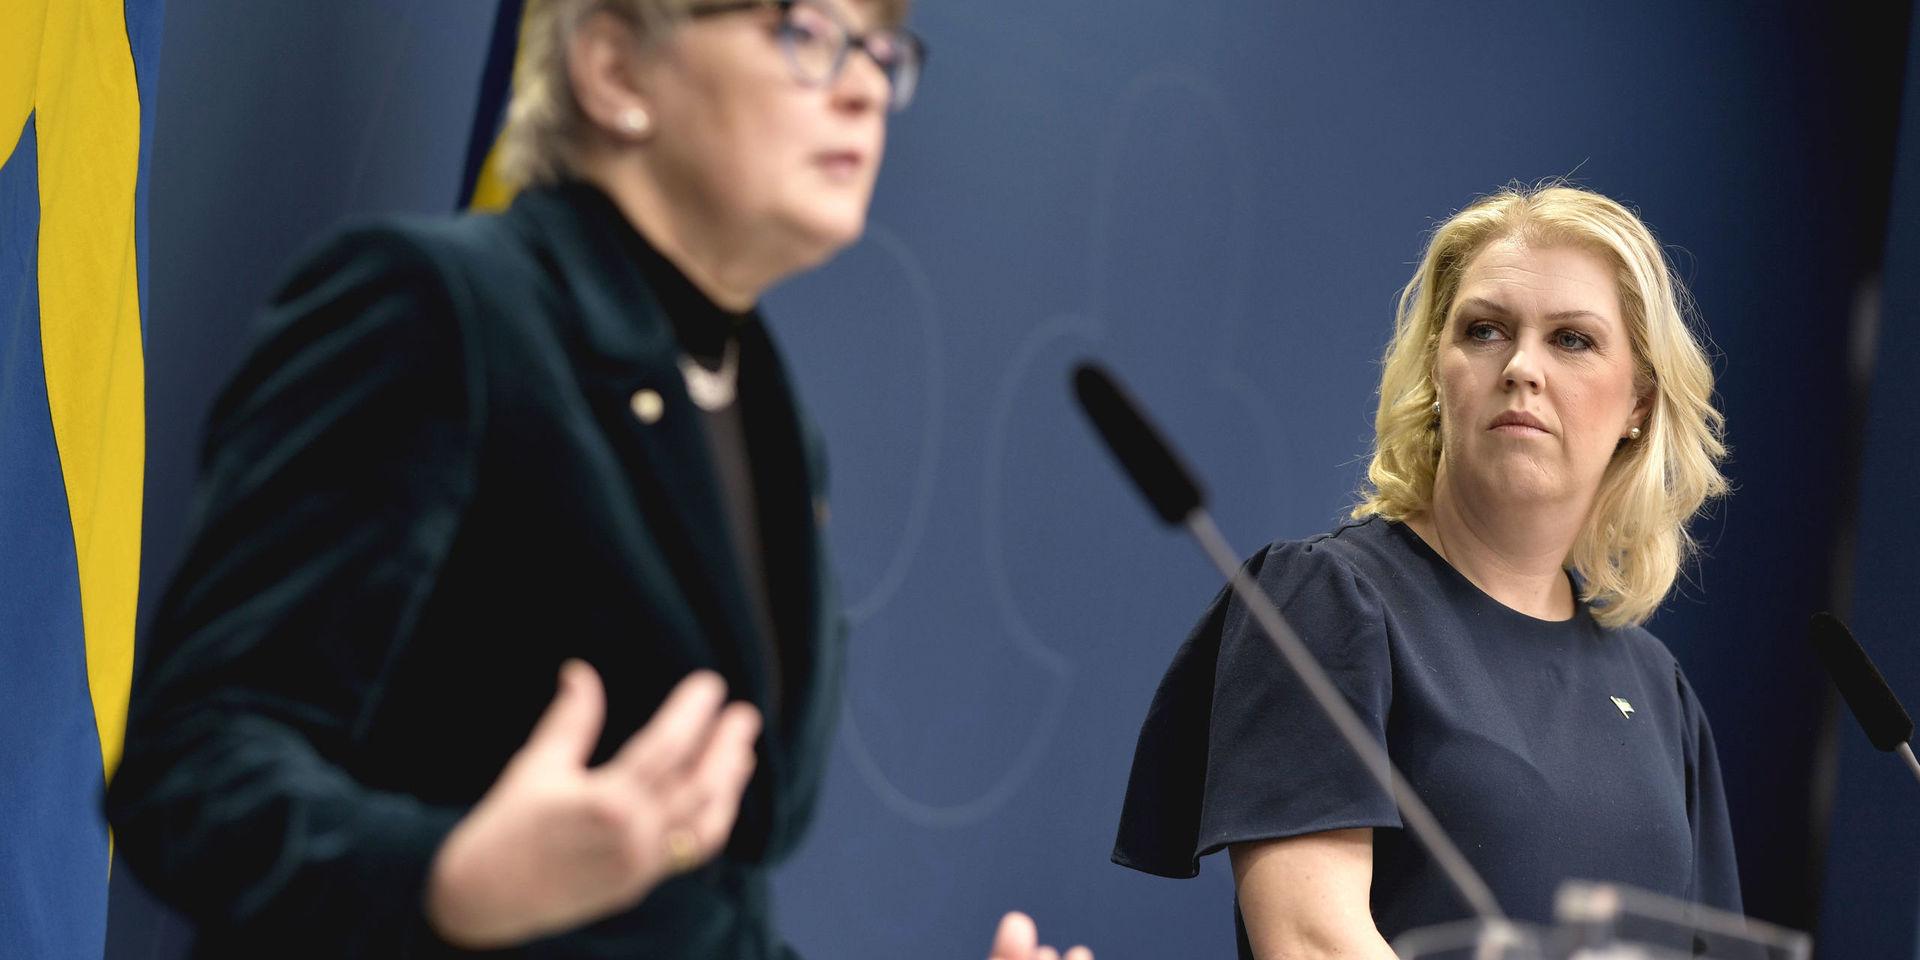 Läkemedelsverkets generaldirektör Catarina Andersson Forsman och socialminister Lena Hallengren håller en pressträff i Rosenbad.